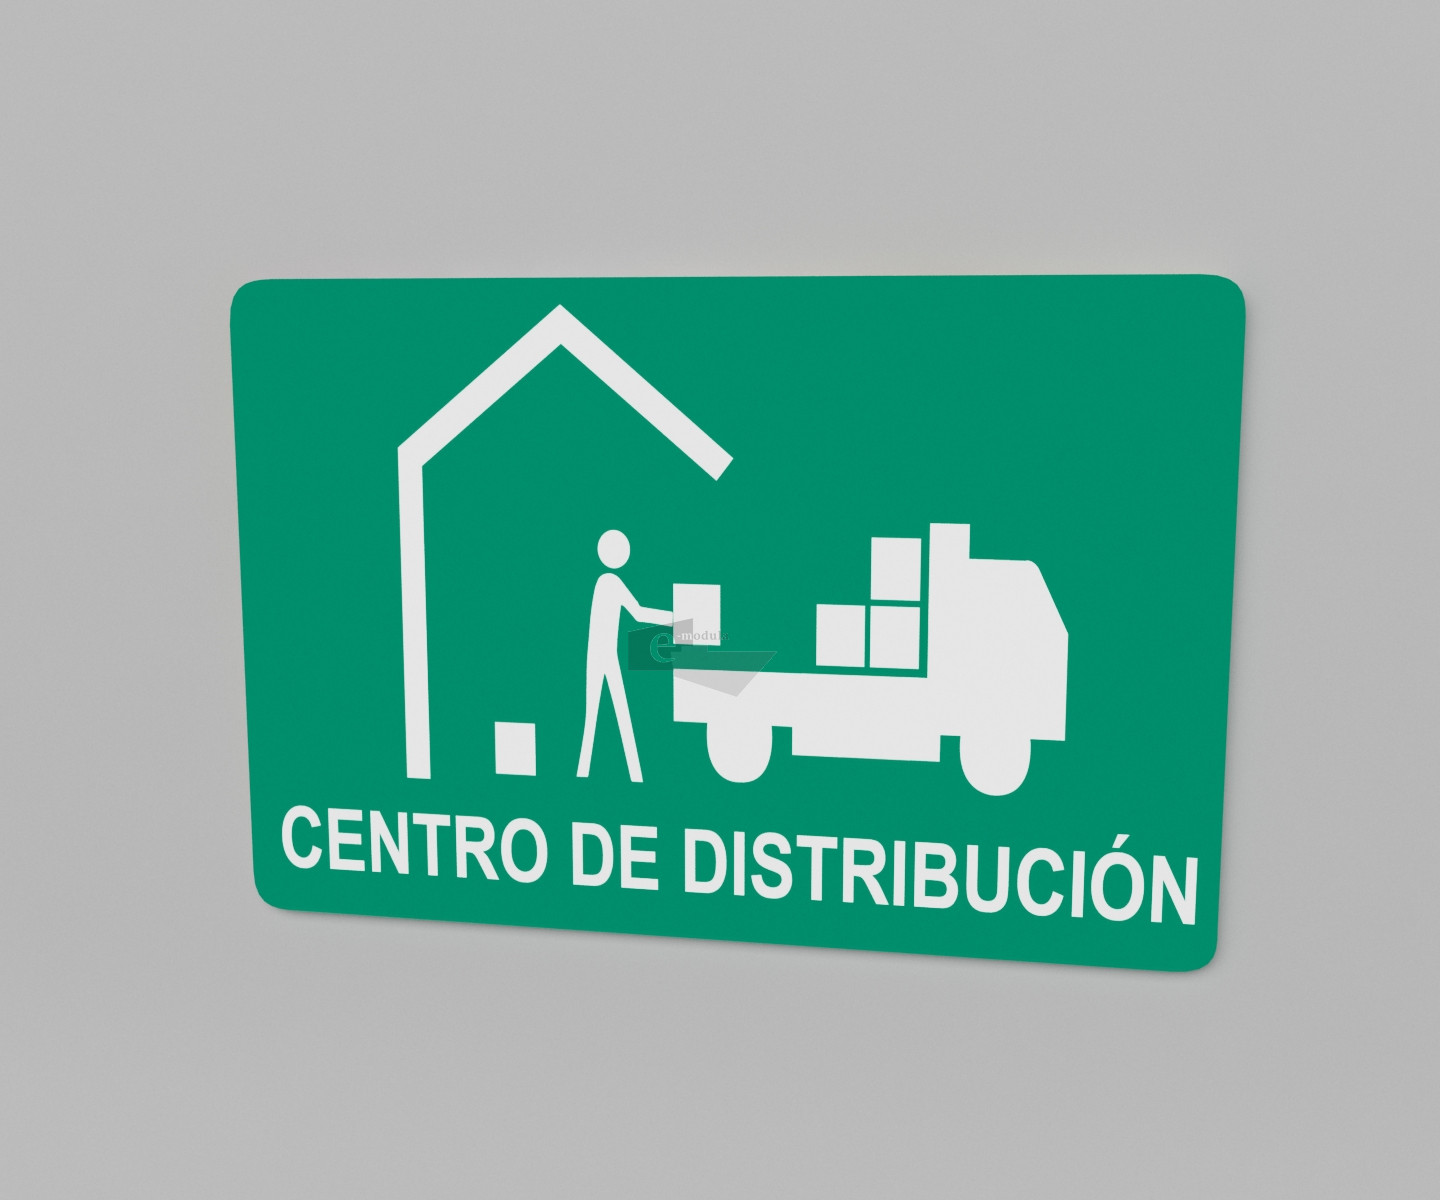 33.33 x 50 cm / protección civil / señal / letrero / centro de distribución izquierda / verde